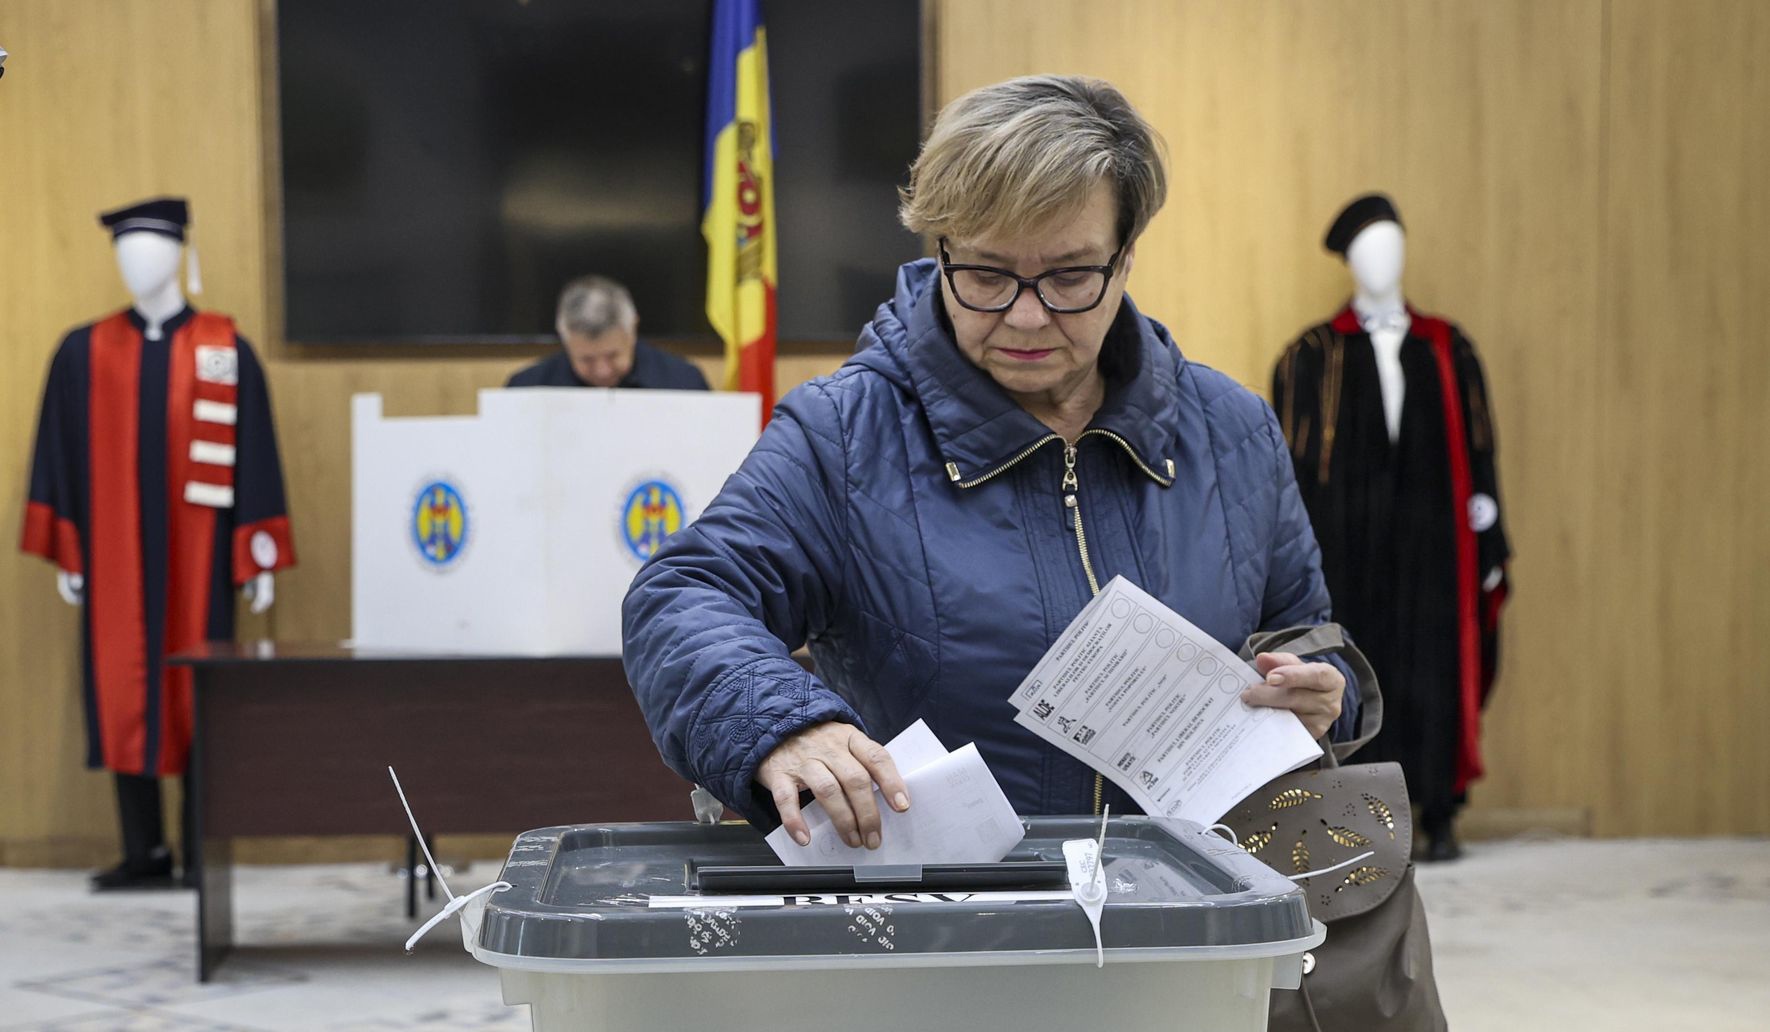 США планируют вовлекать НПО в избирательный процесс в Молдове